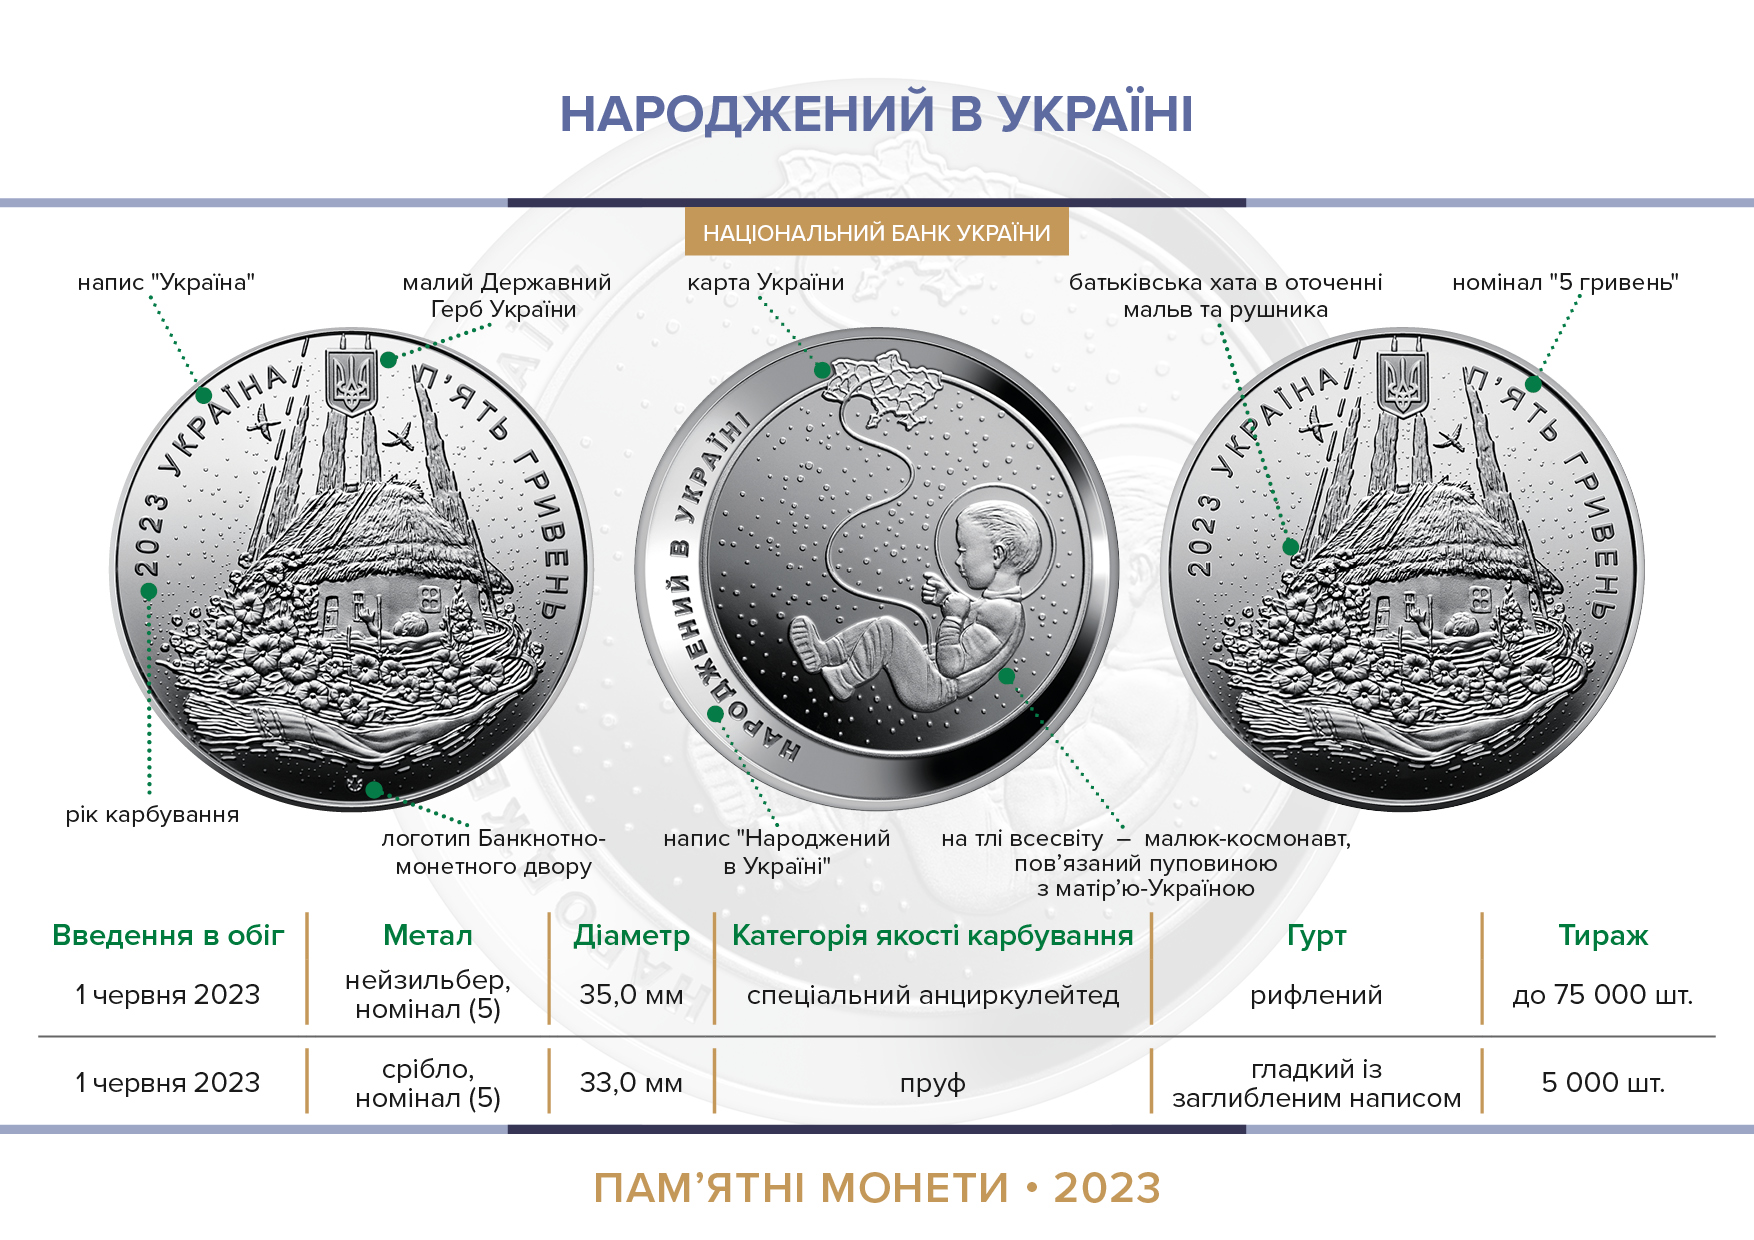 Пам’ятні монети "Народжений в Україні" уведені в обіг із 01 червня 2023 року